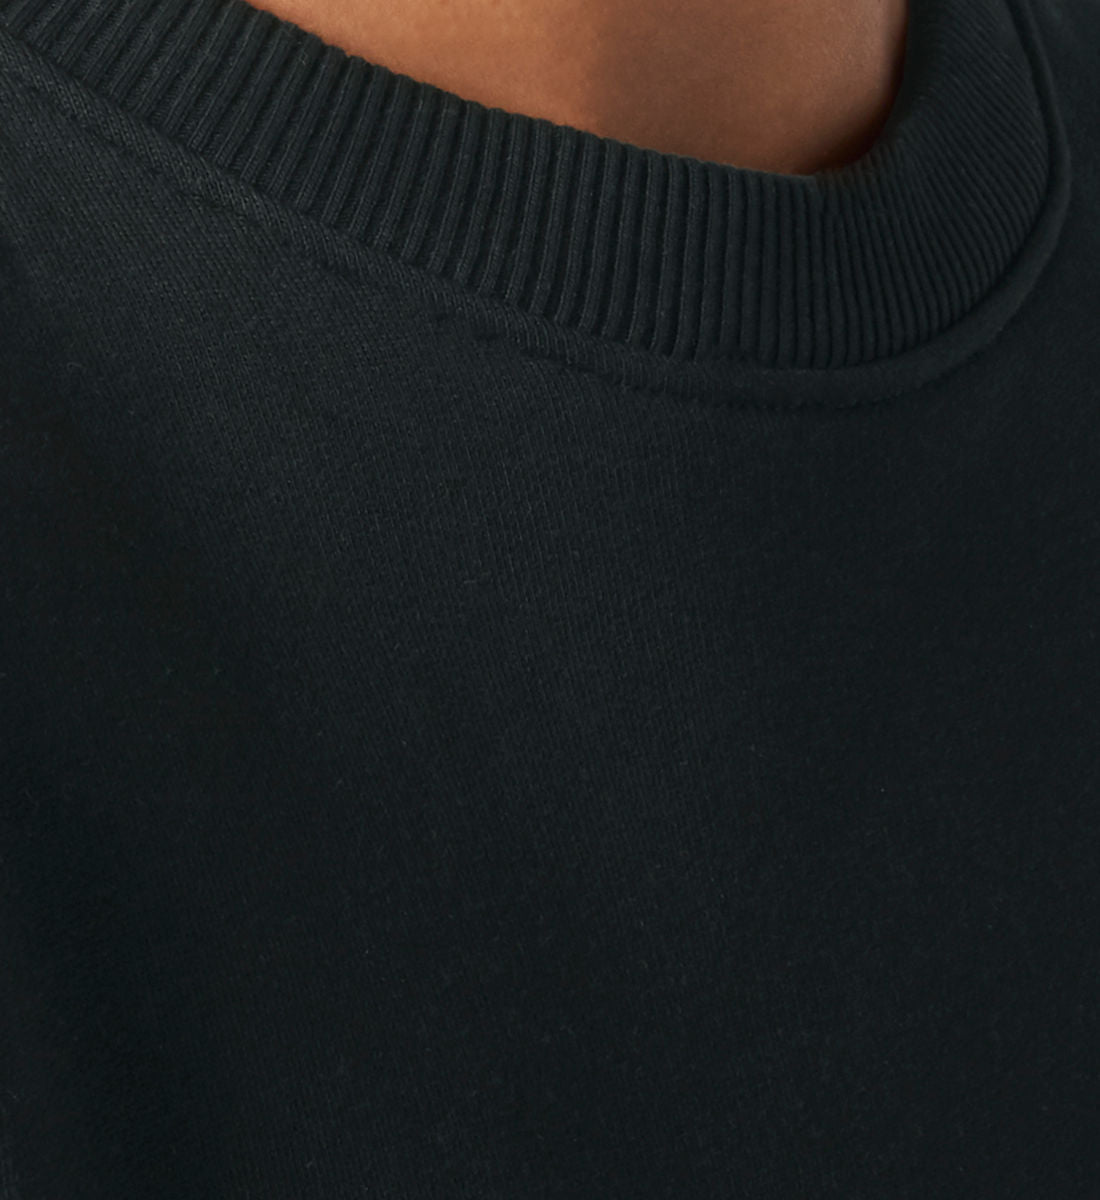 Schwarzes Sweatshirt Unisex für Frauen und Männer bedruckt mit dem Design der Roger Rockawoo Kollektion Your Girlfriends Sweatshirt